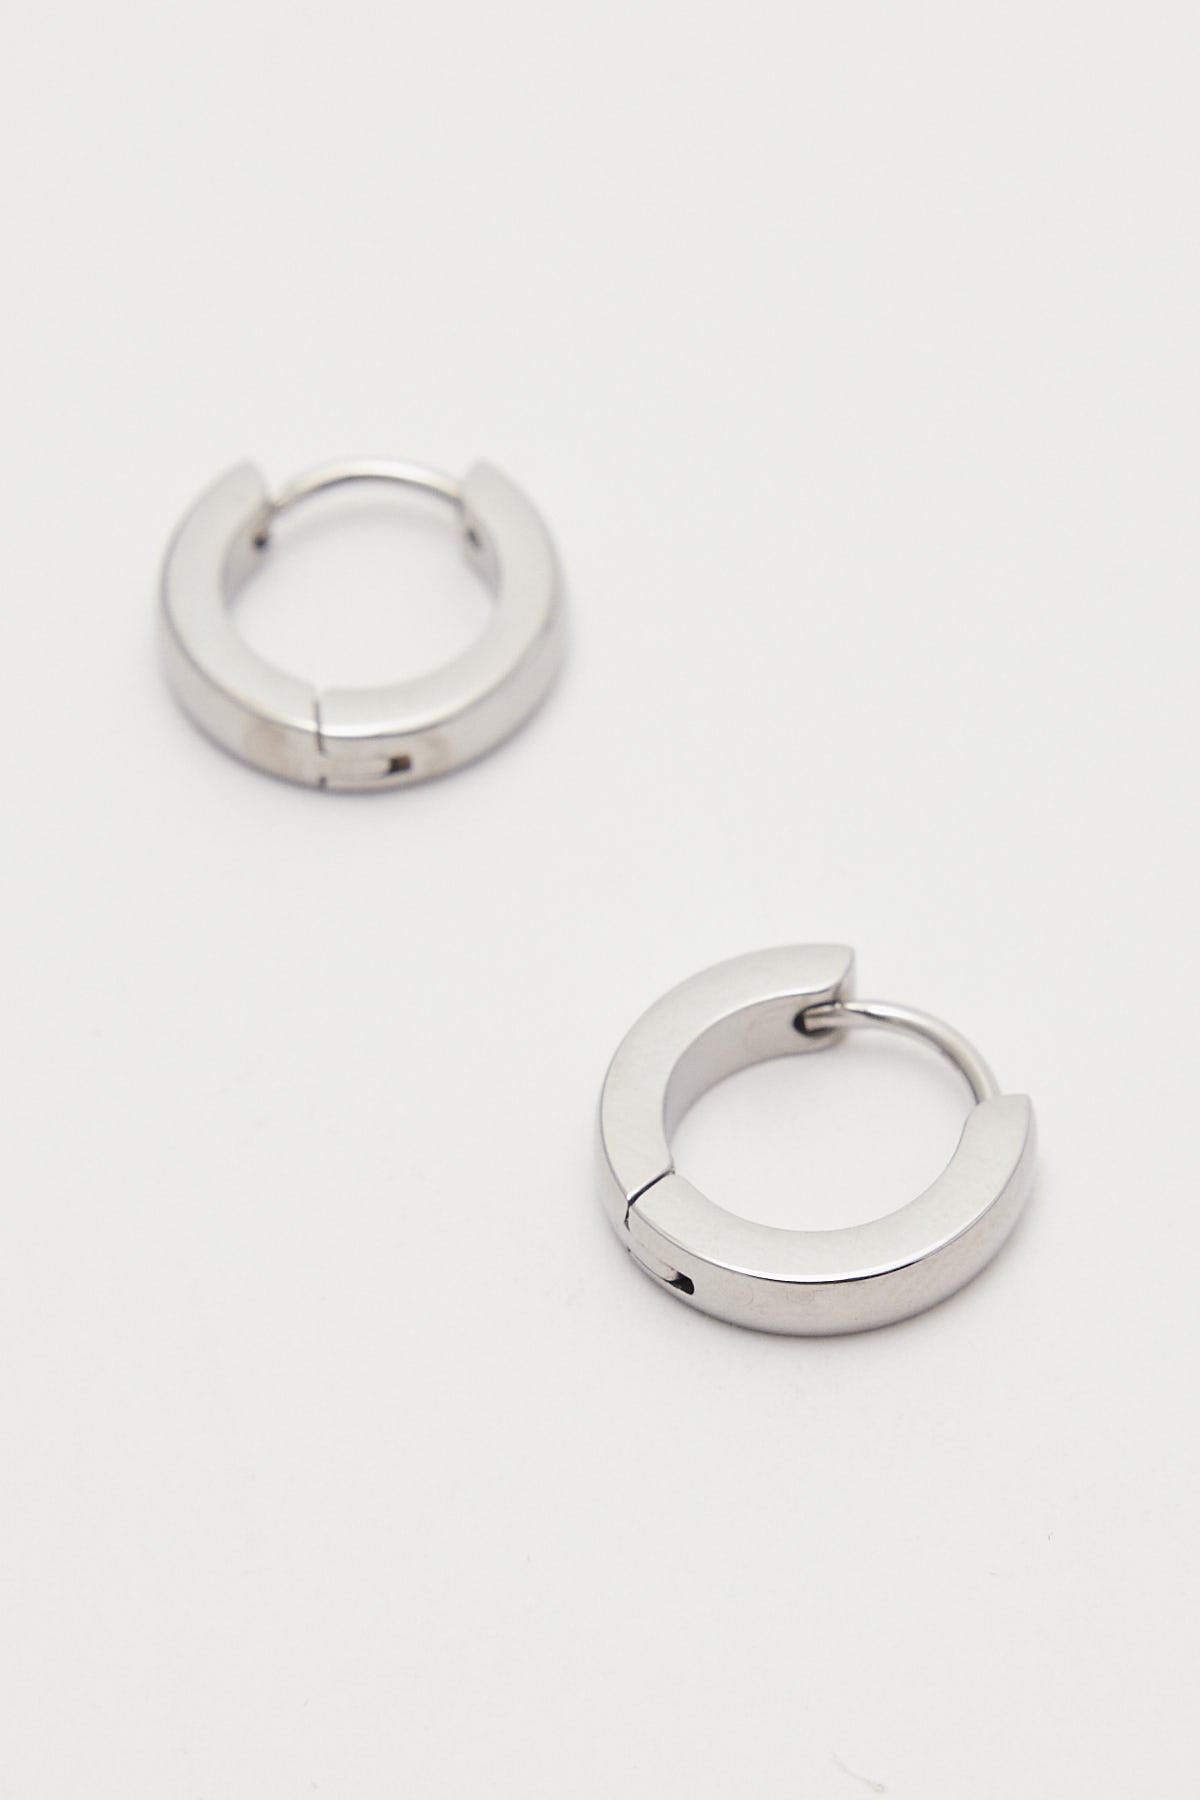 Neovision Perpetual Huggie Earrings Stainless Steel